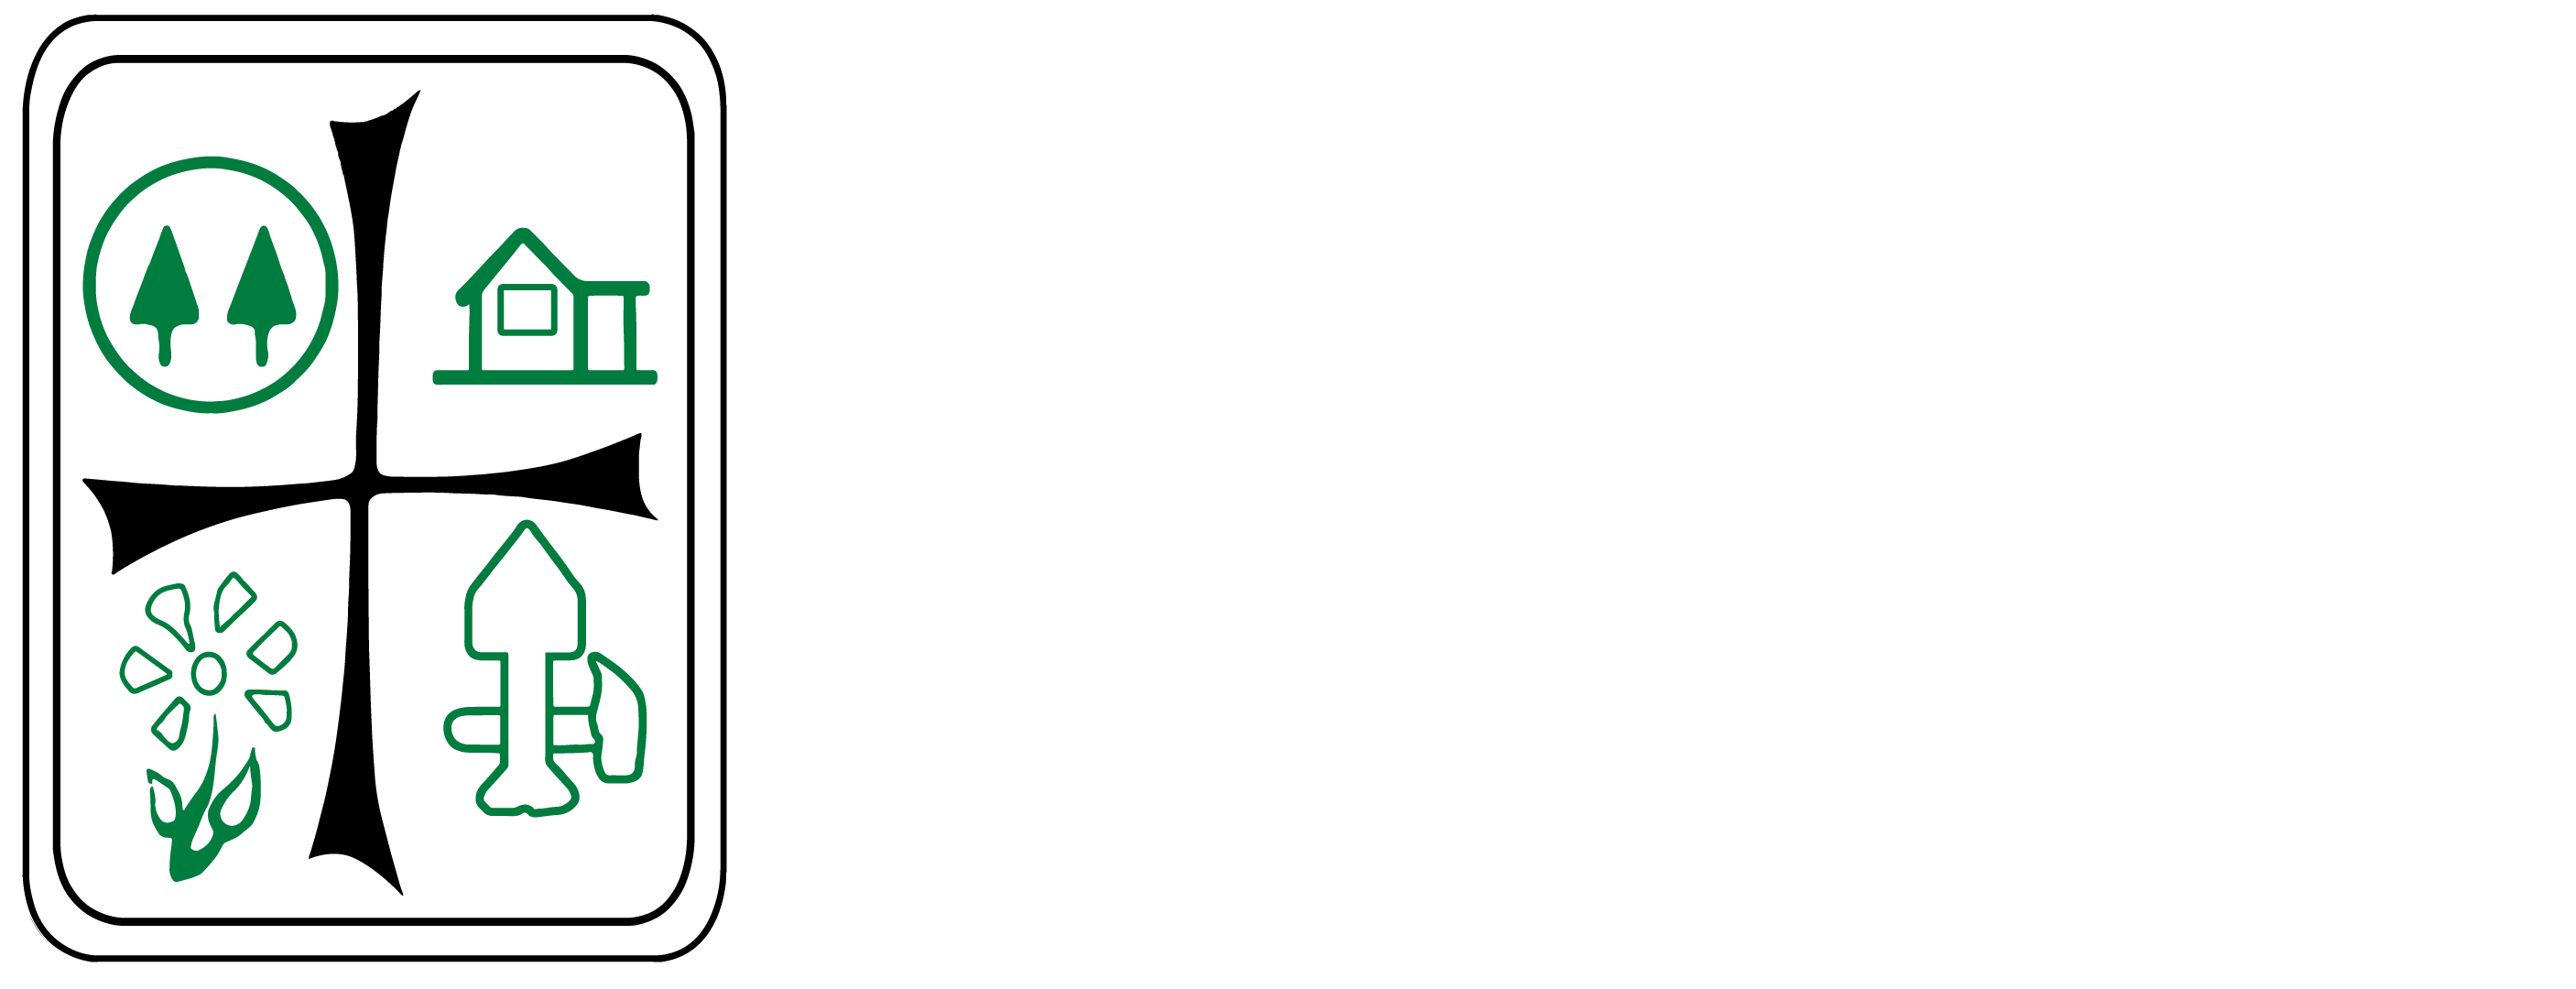 HERMANDAD HONDURAS ONGD | Asociación Hermandad Honduras